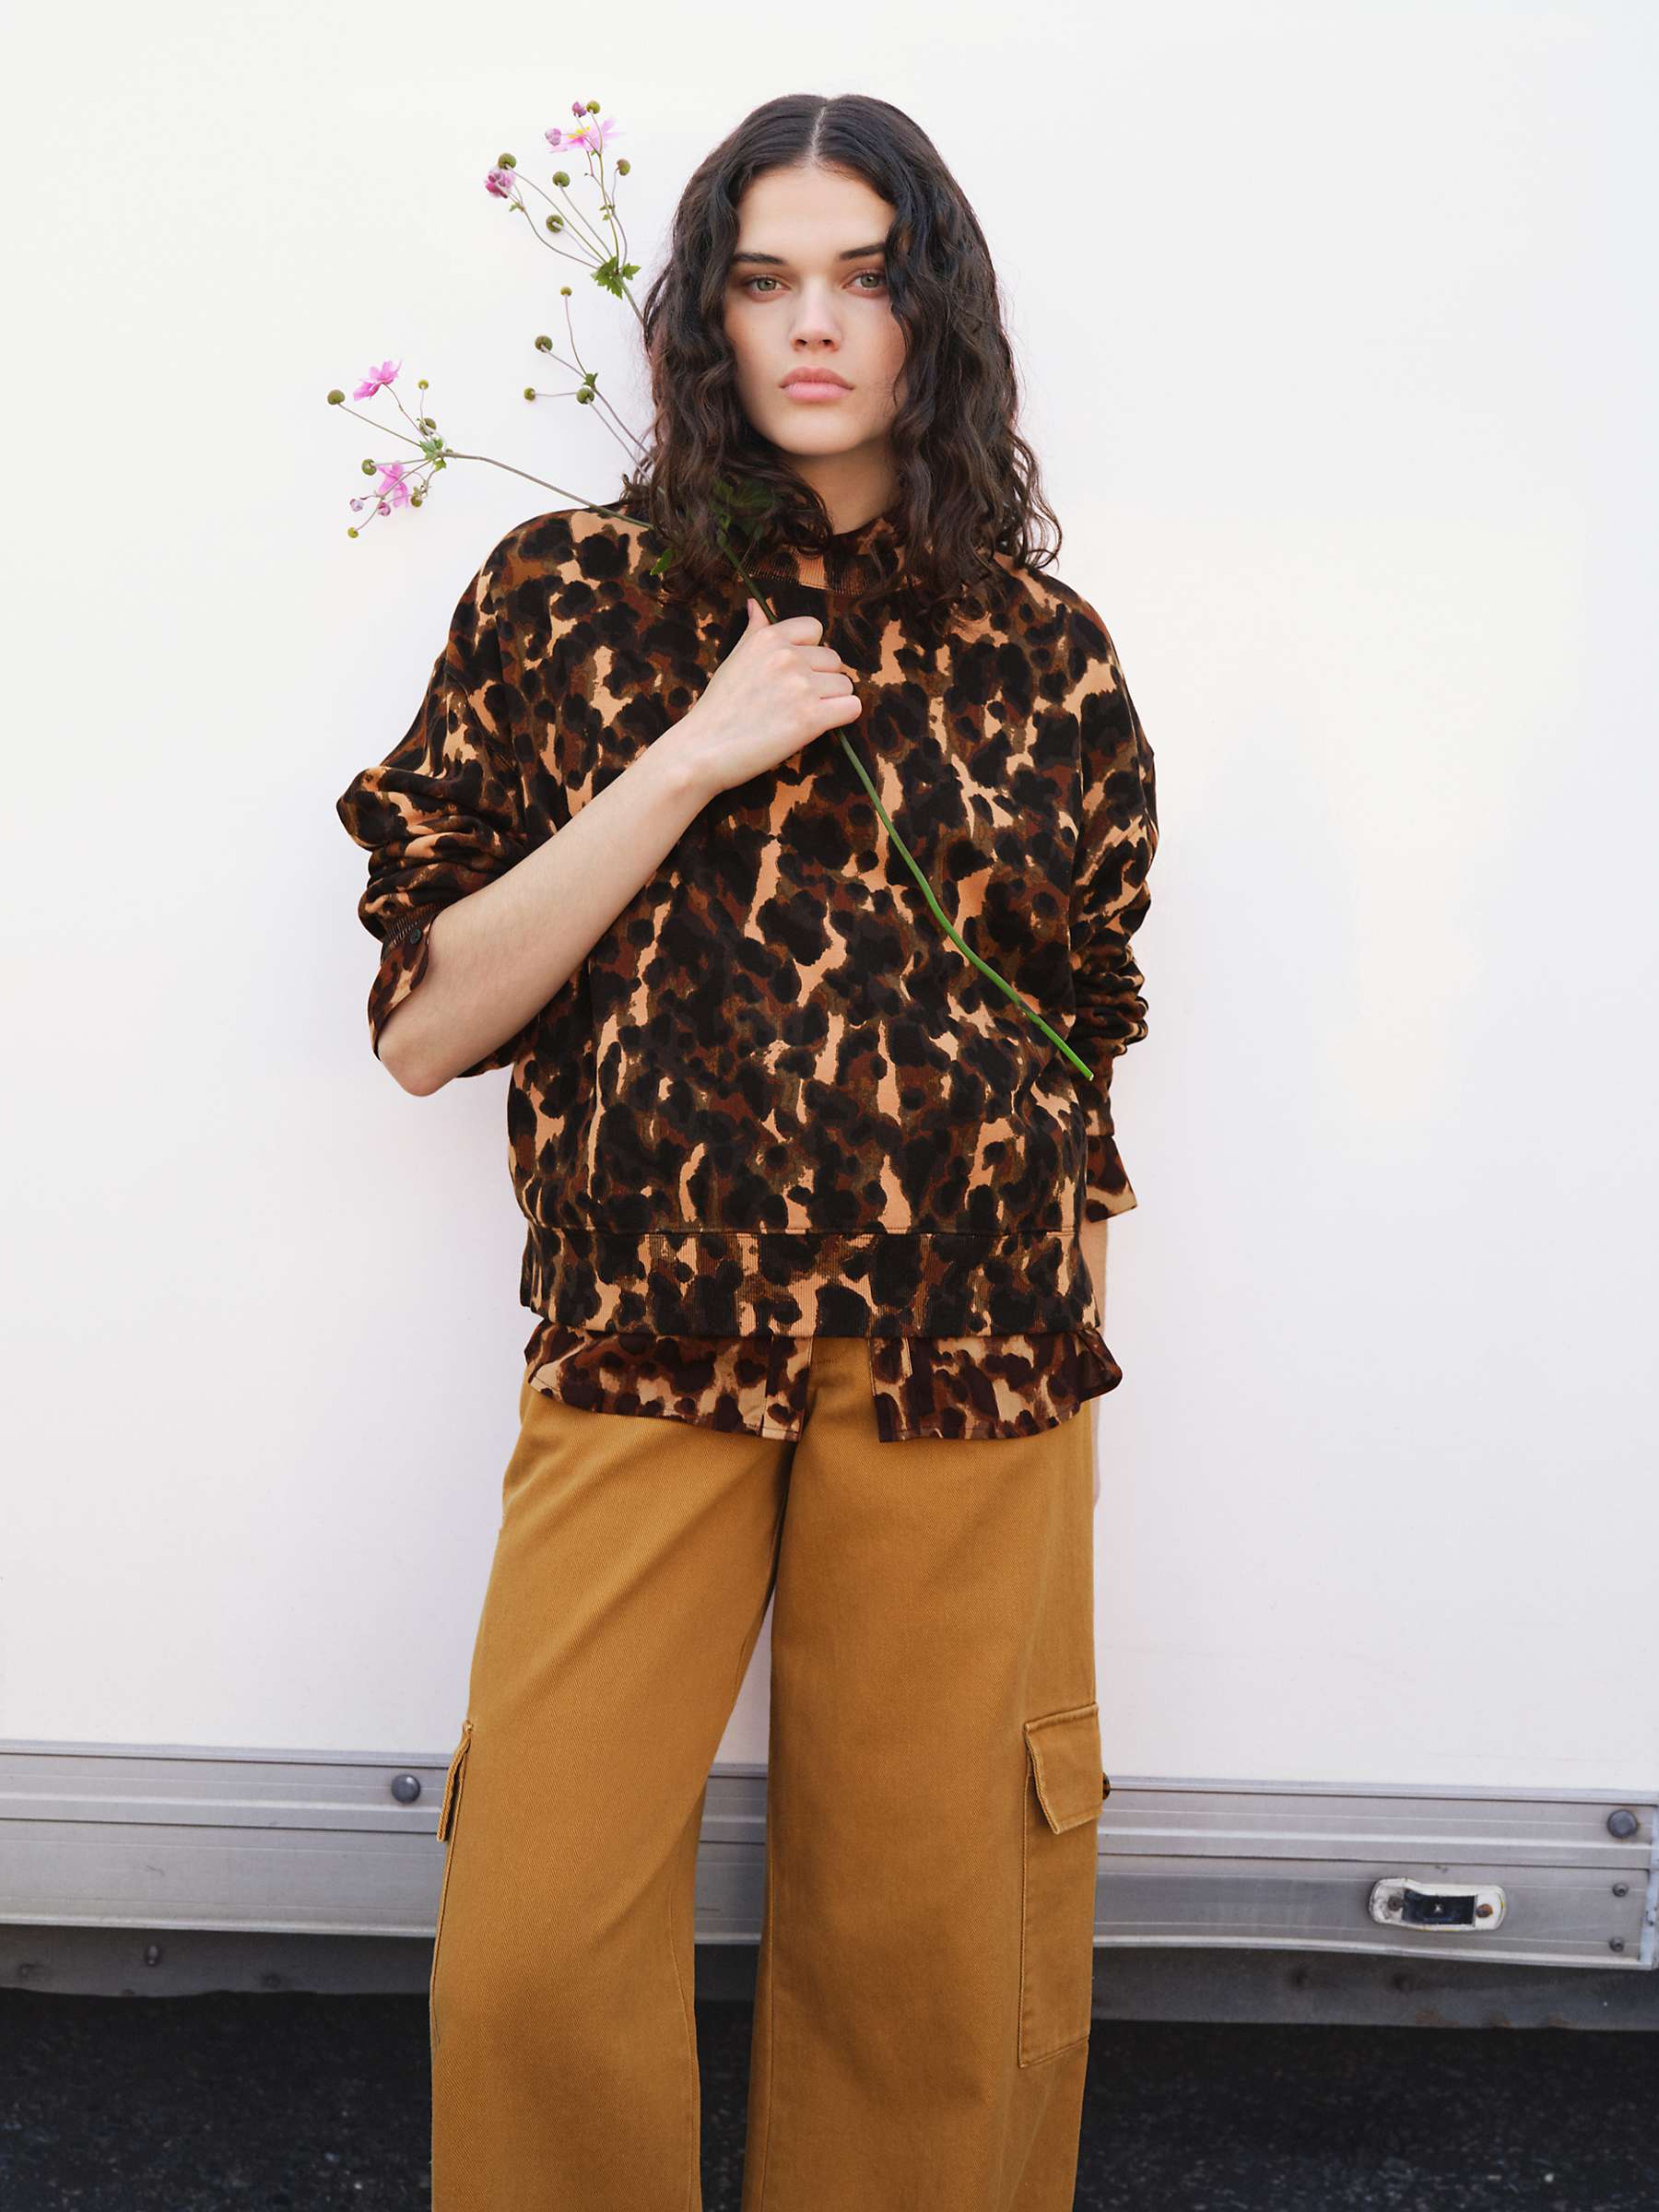 Buy HUSH Leanne Leopard Print Cropped Sweatshirt, Brown/Multi Online at johnlewis.com